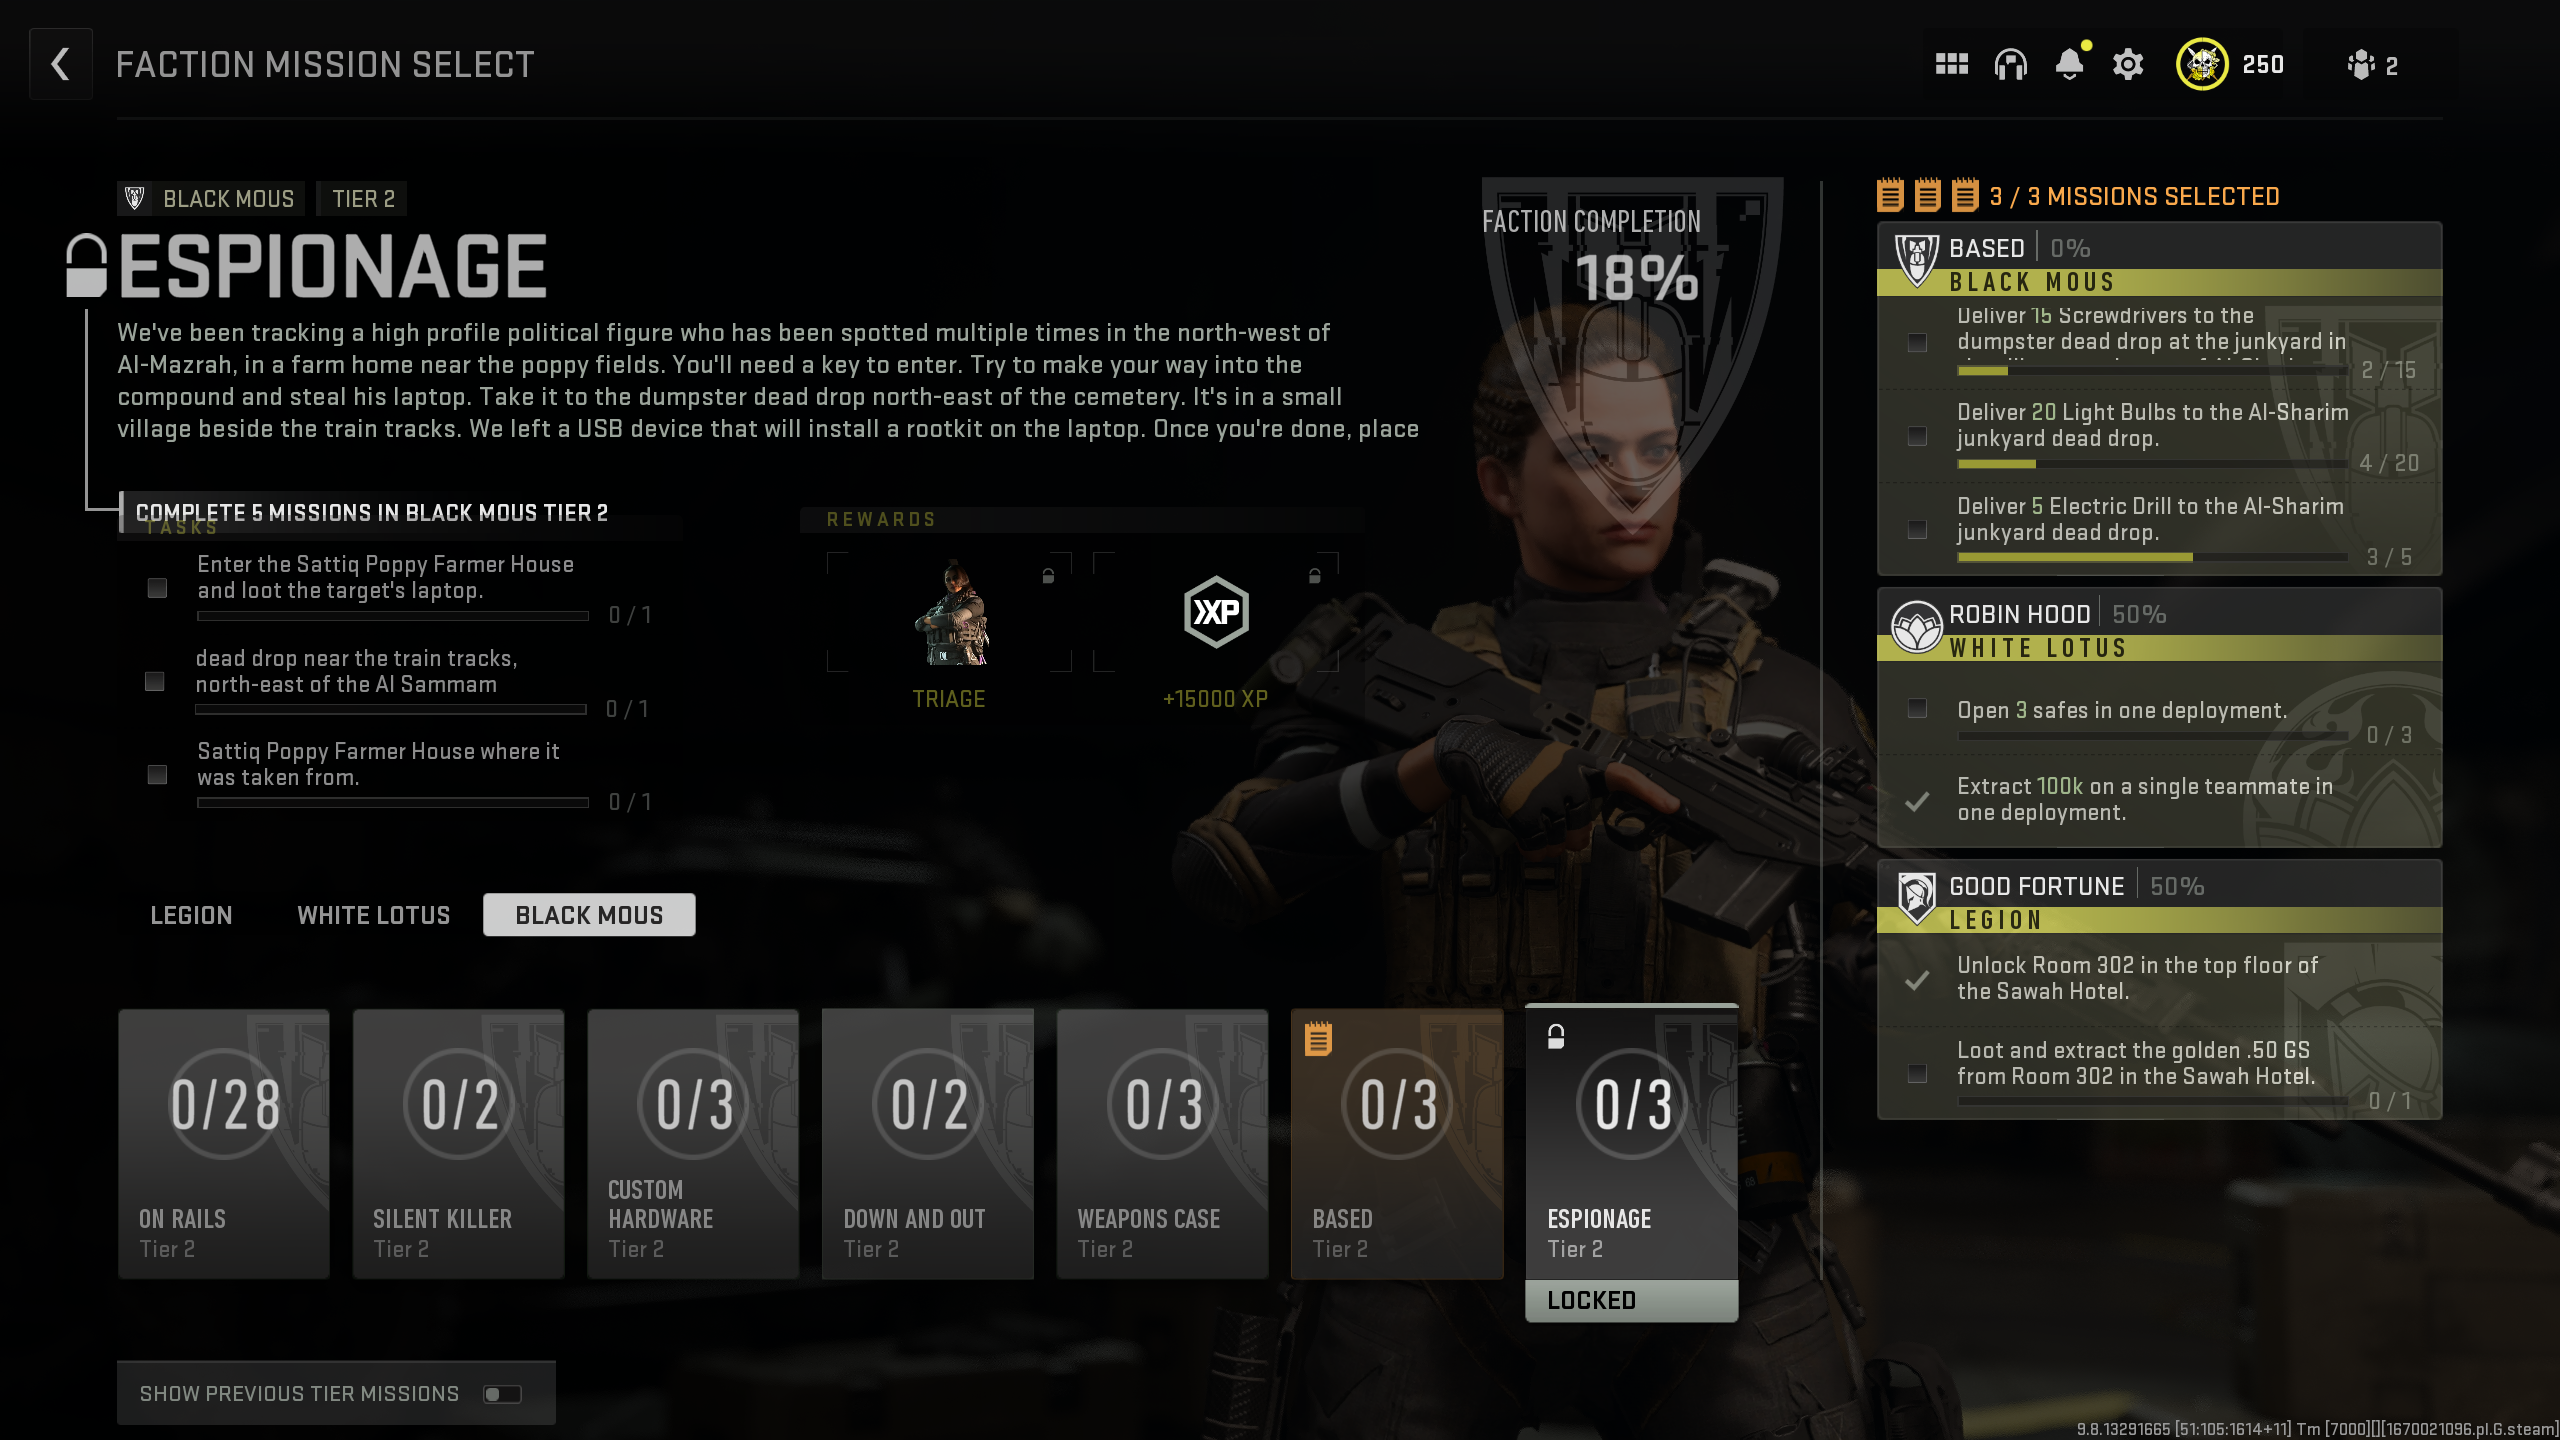 Call of DutY Warzone 2.0 DMZ mode free skins de operador como recompensa por completar missões de facção